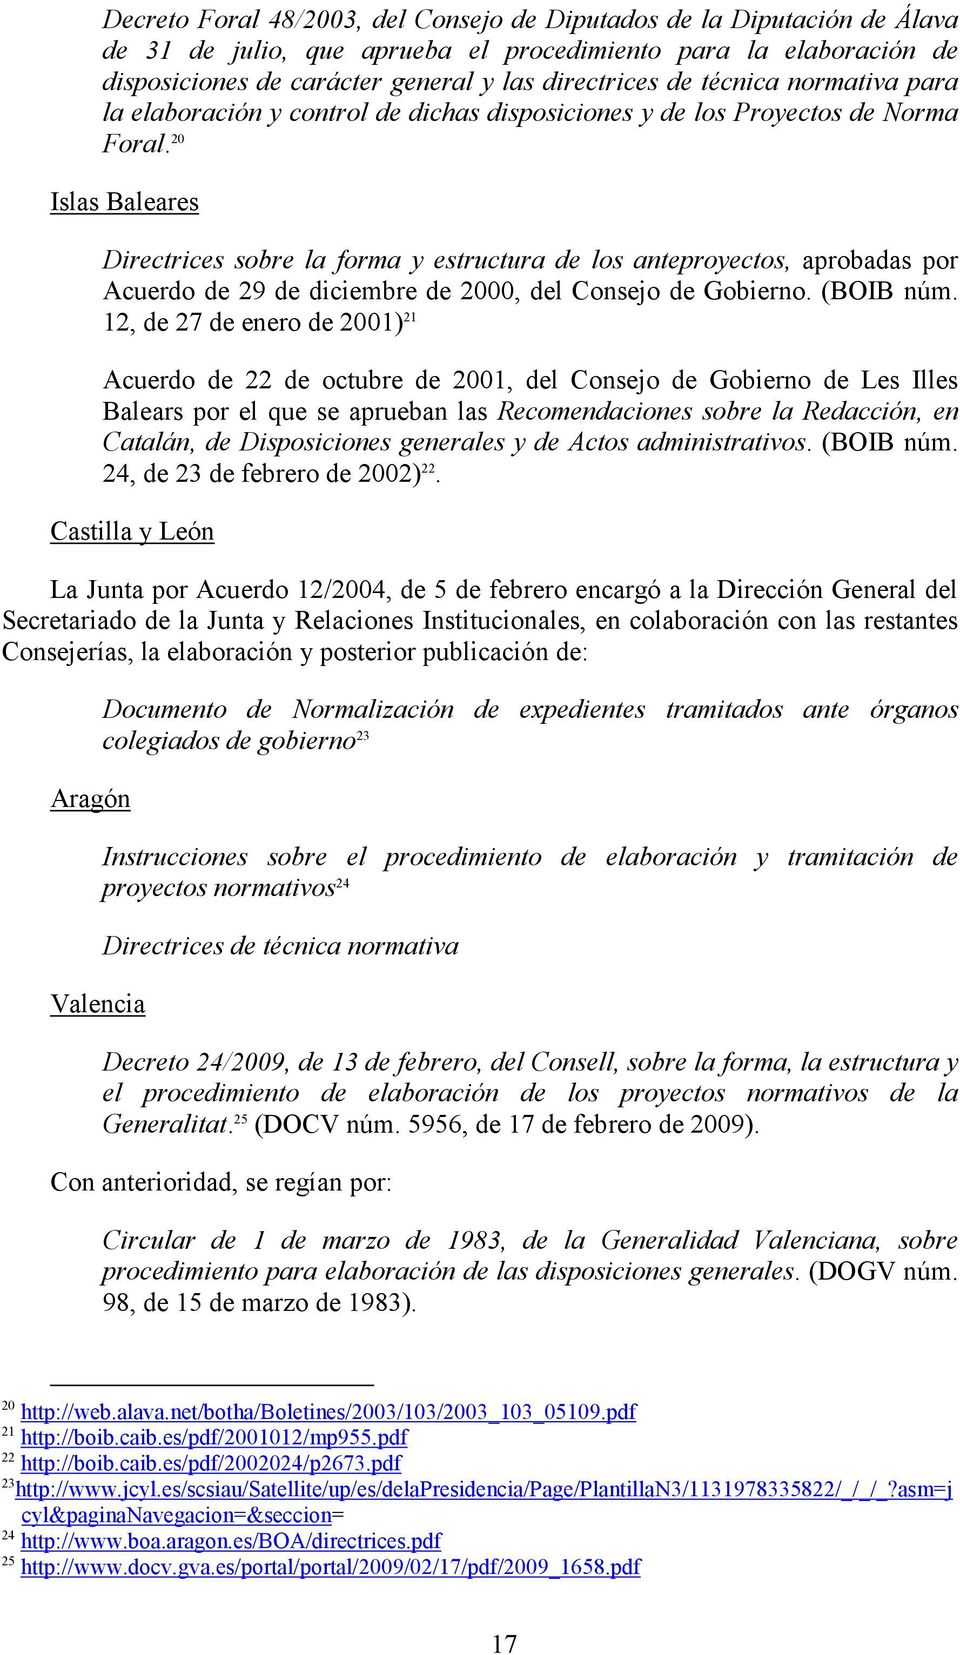 20 Islas Baleares Directrices sobre la forma y estructura de los anteproyectos, aprobadas por Acuerdo de 29 de diciembre de 2000, del Consejo de Gobierno. (BOIB núm.